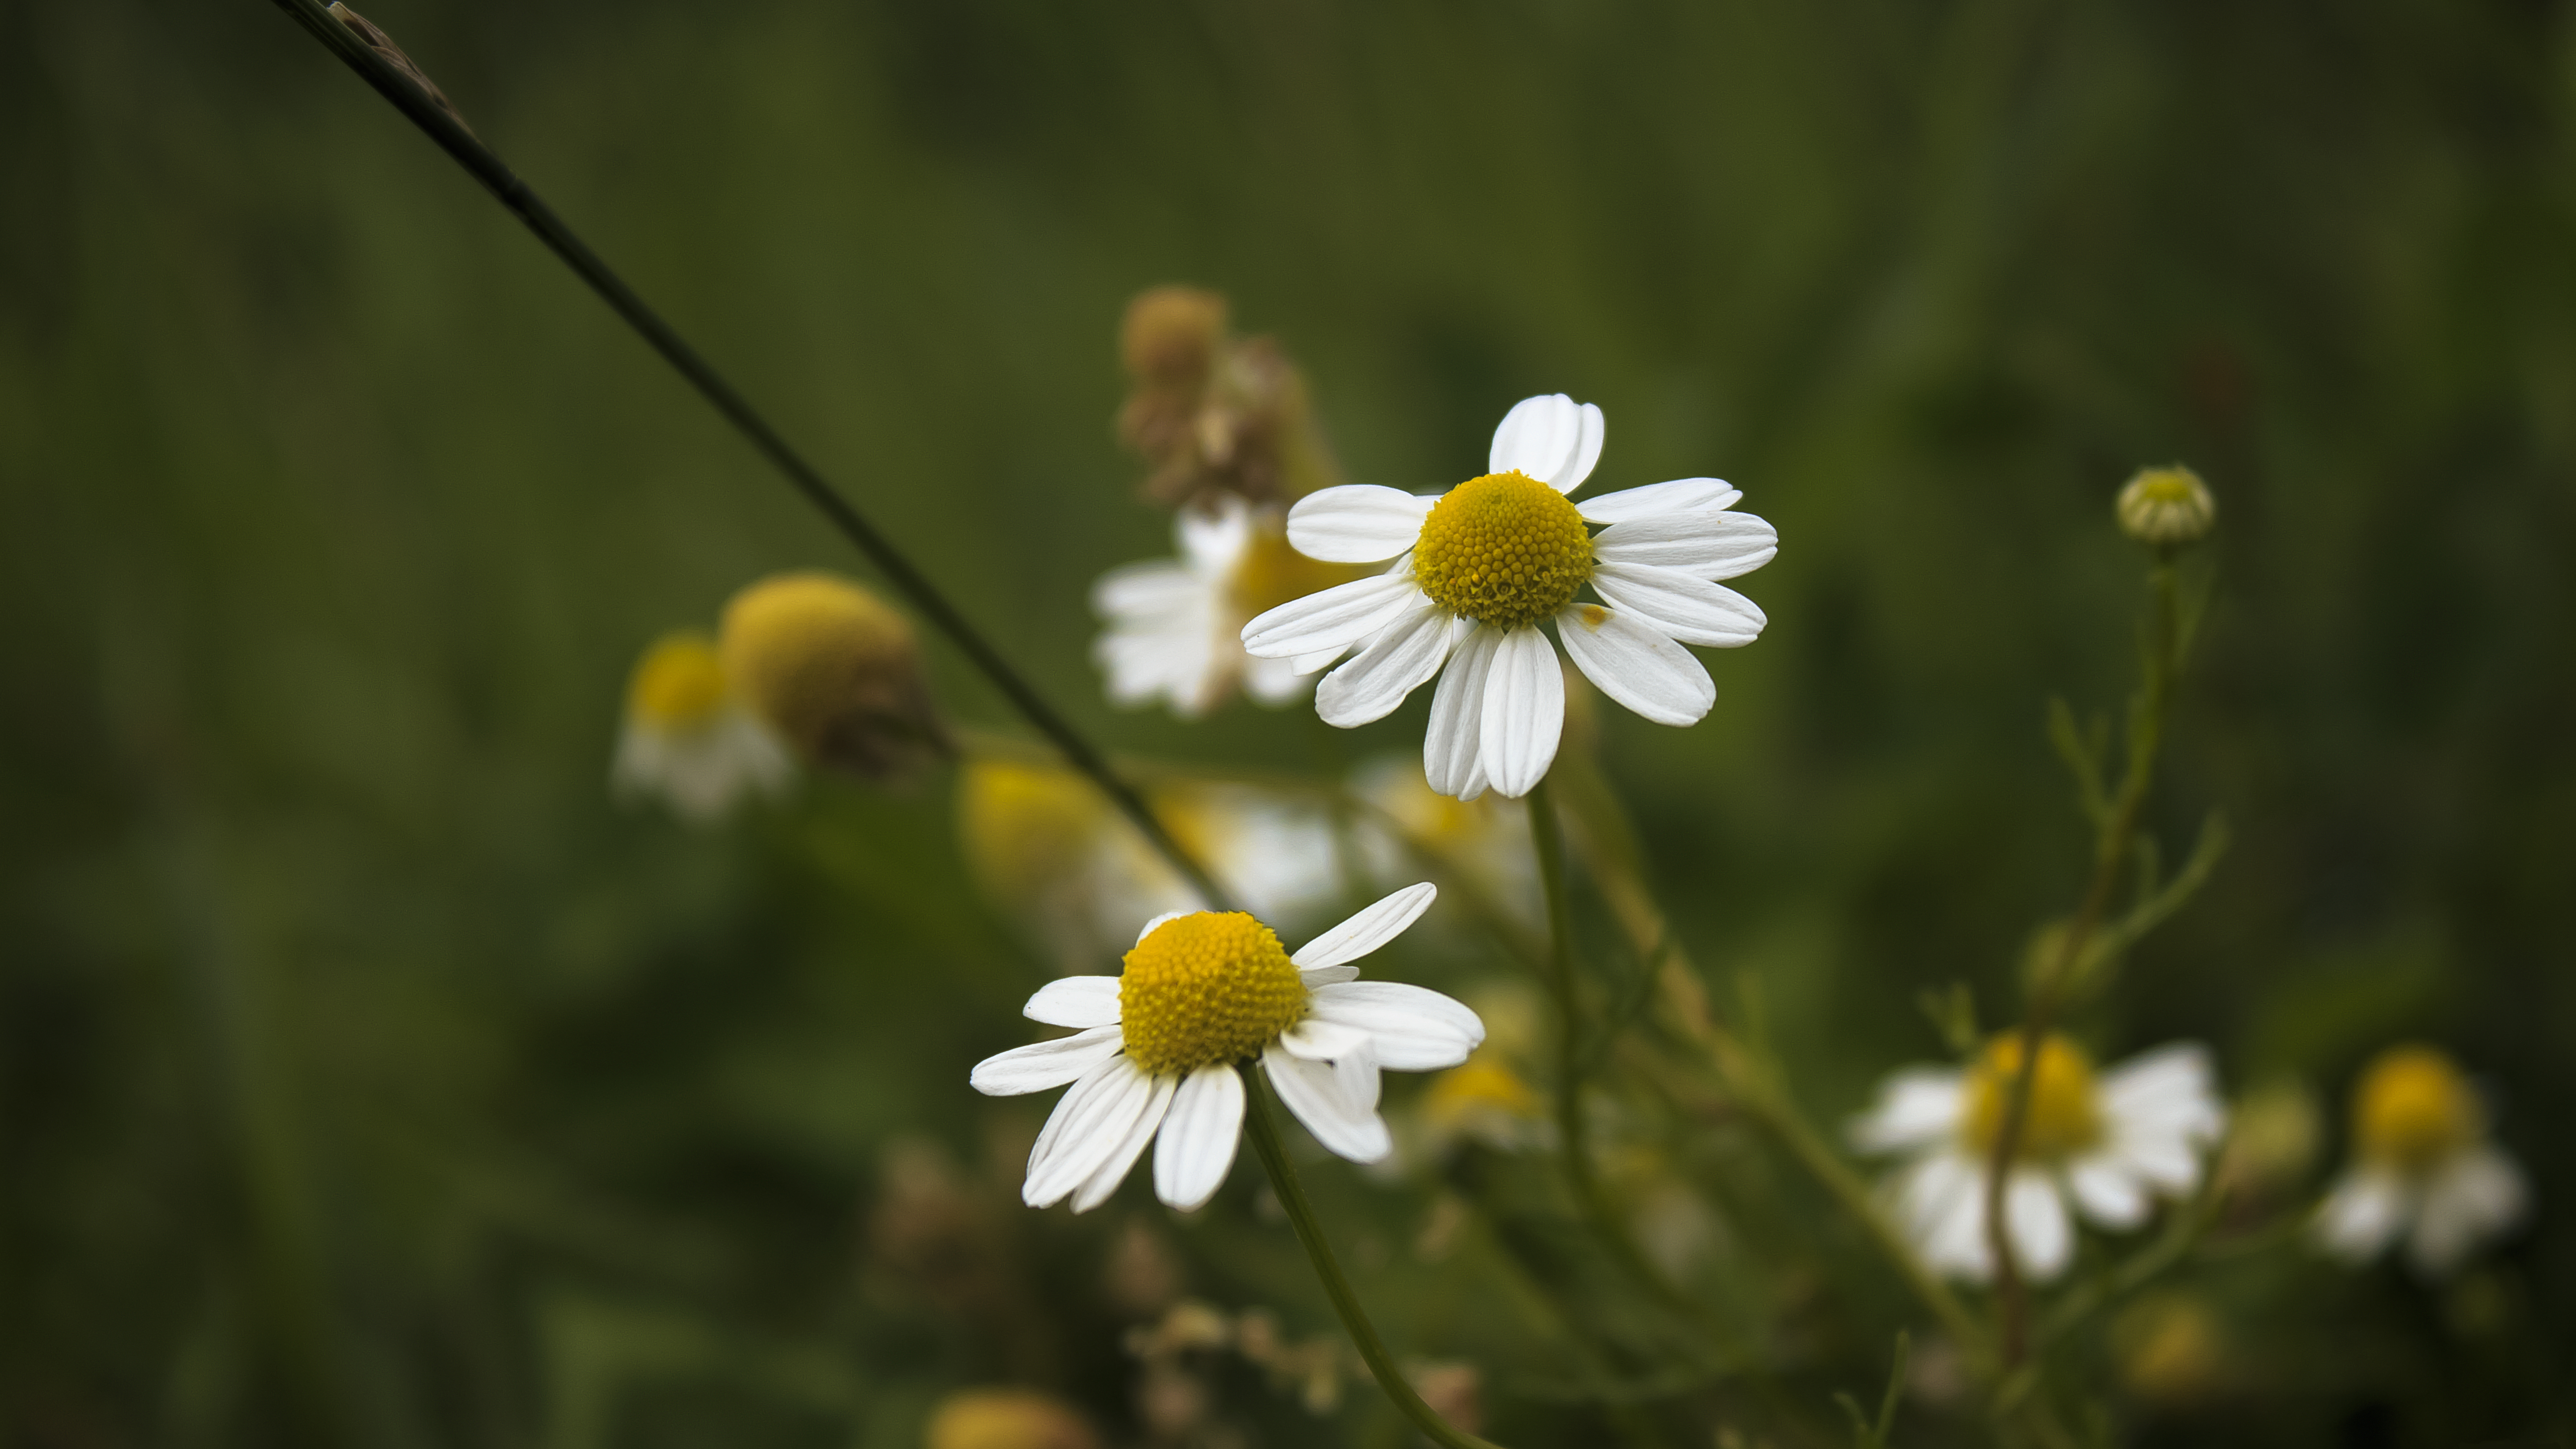 White little Flowers by Danimatie on DeviantArt